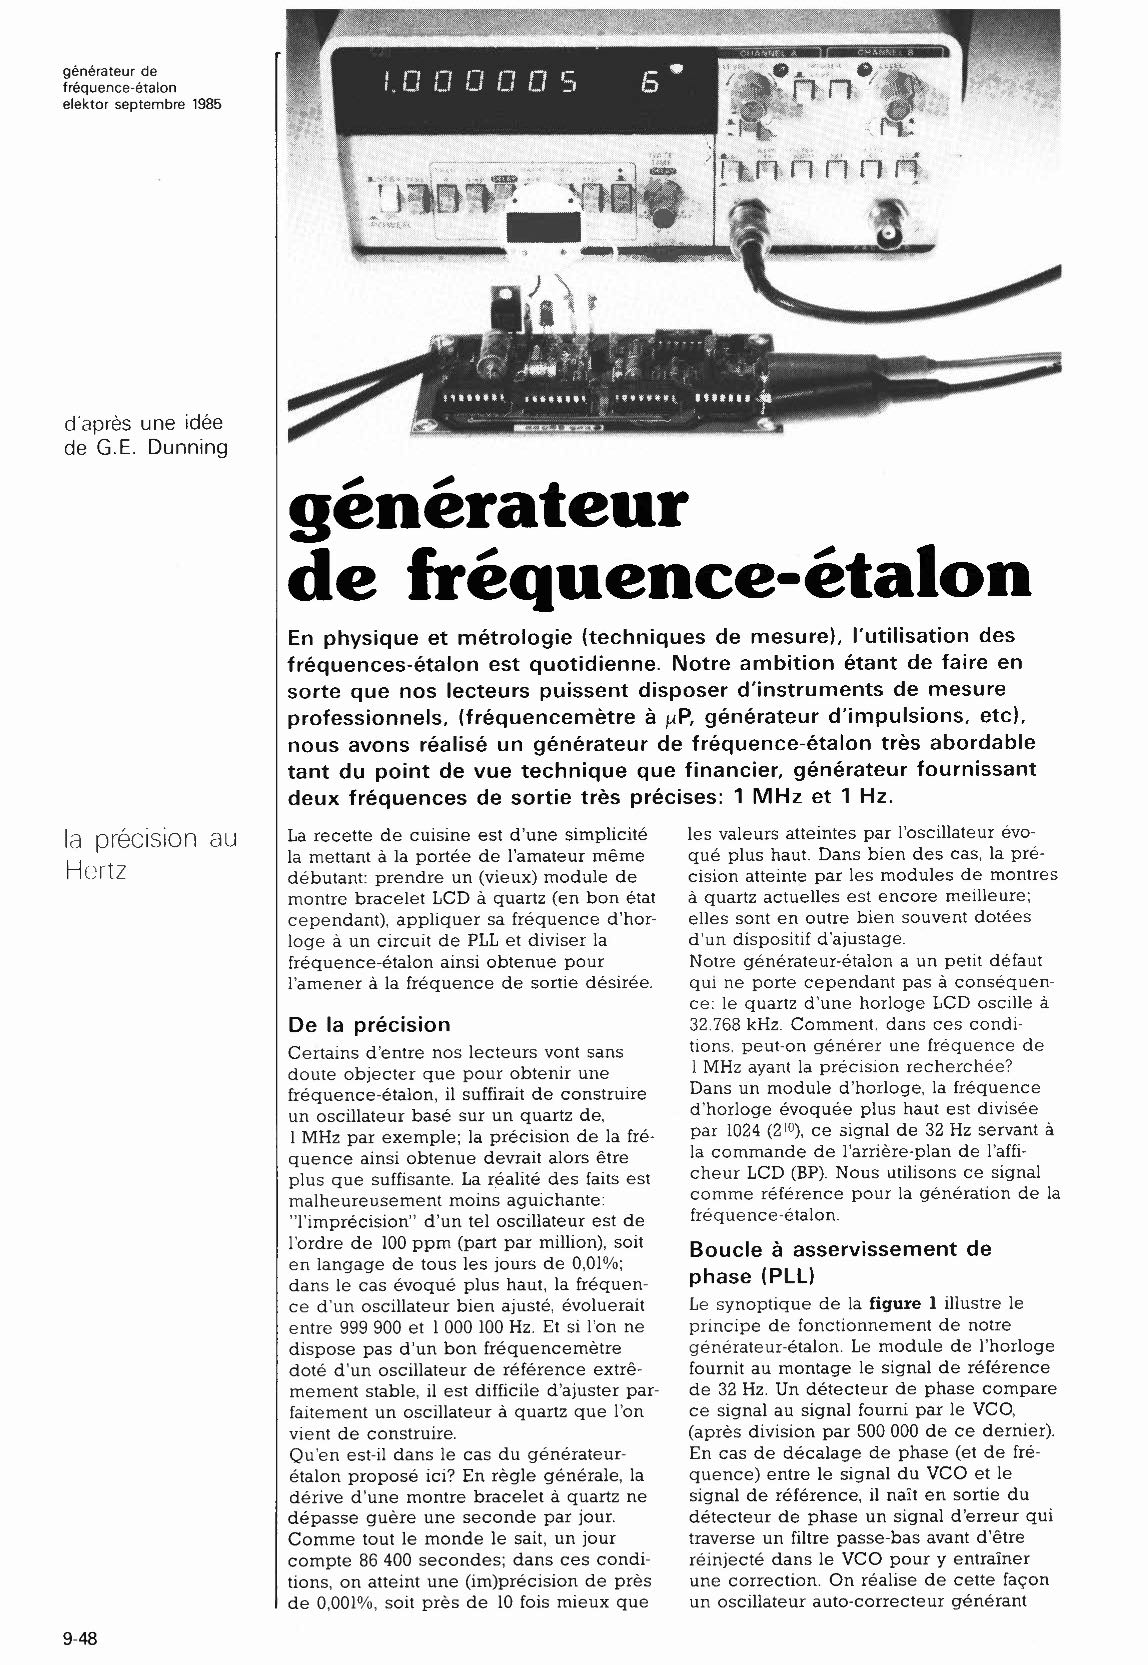 générateur de fréquence-étalon